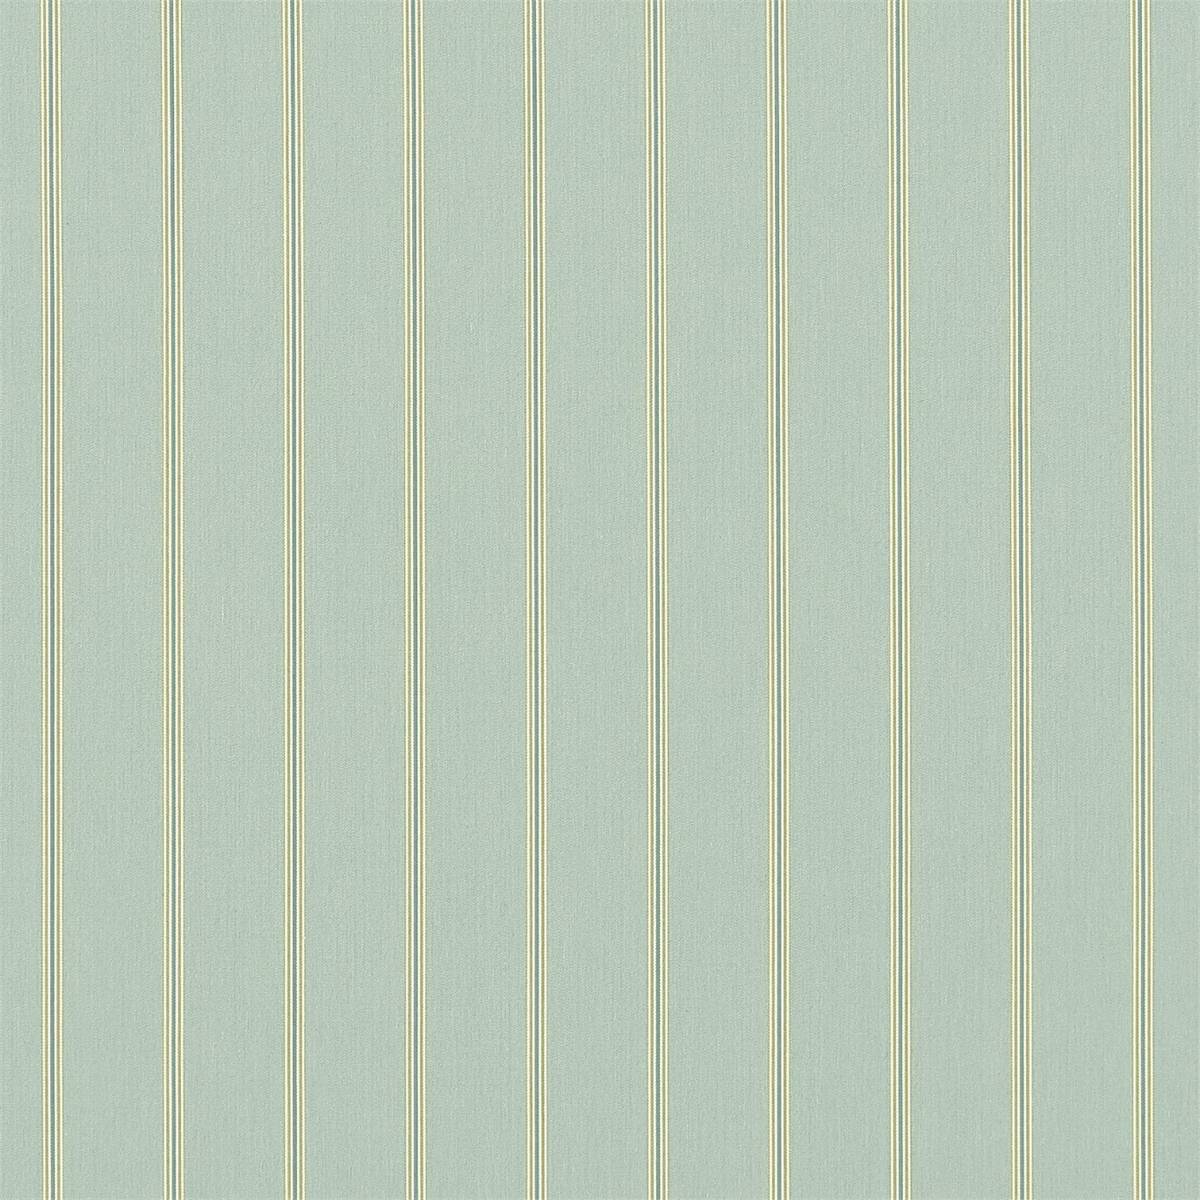 Annis Sea Blue/Pistachio Fabric by Sanderson